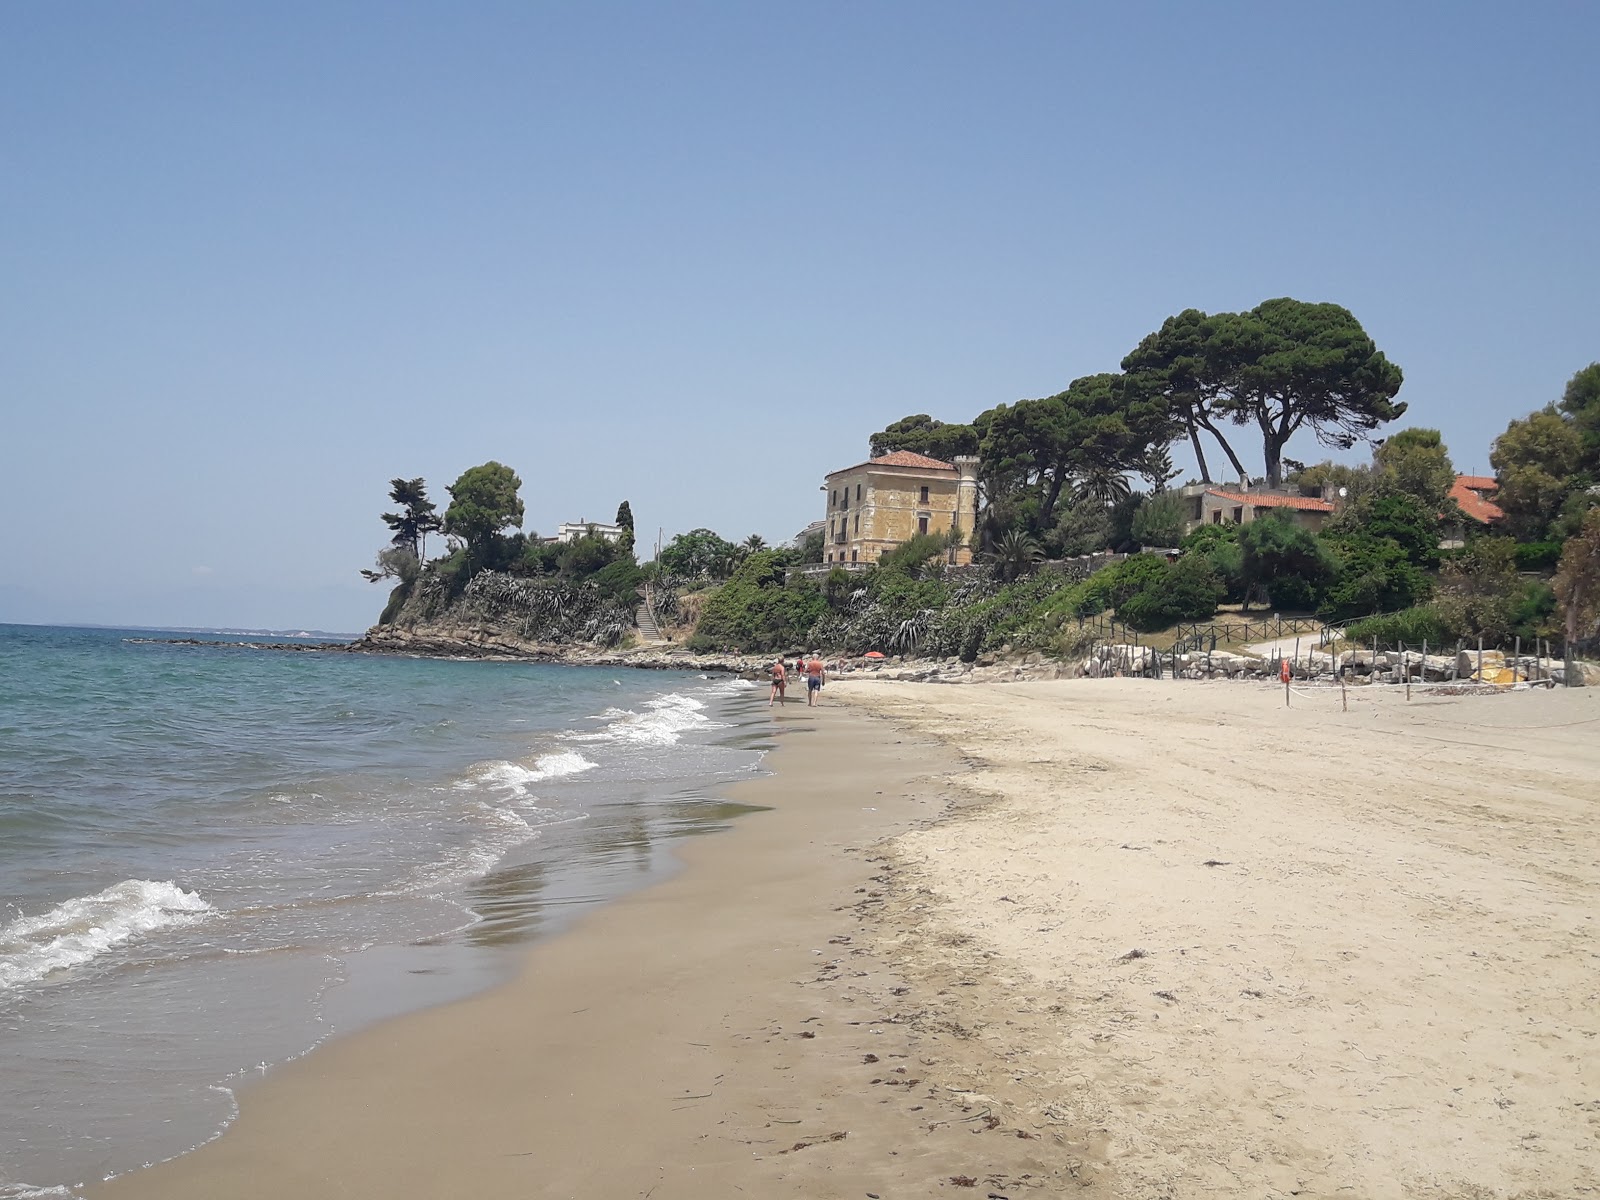 Agropoli Plajları'in fotoğrafı kahverengi kum yüzey ile